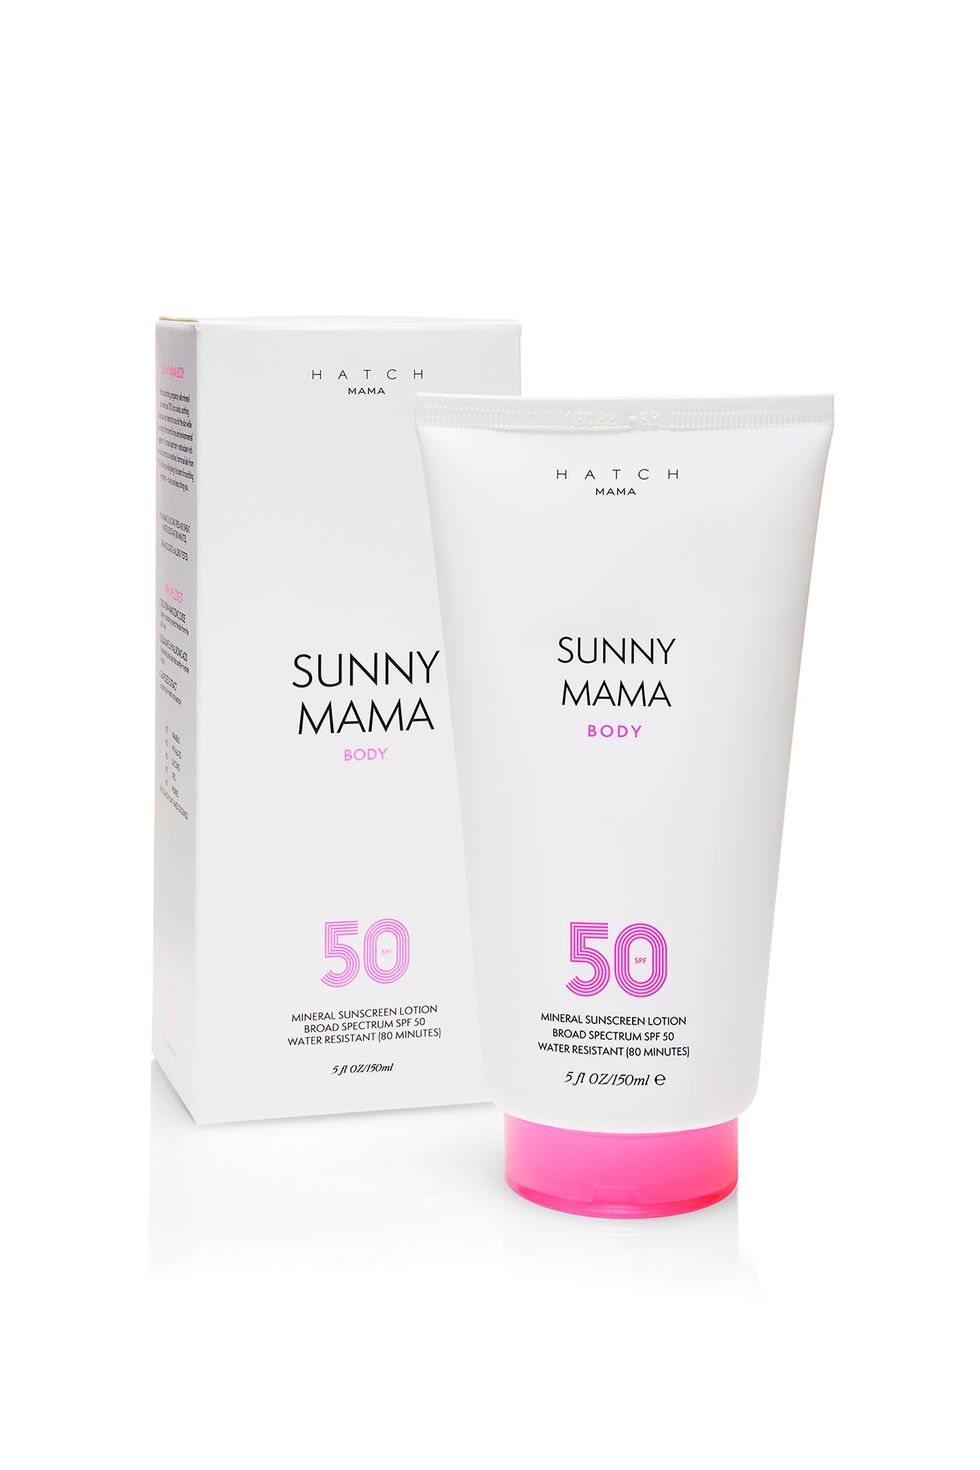 Sunny Mama Body Sunscreen